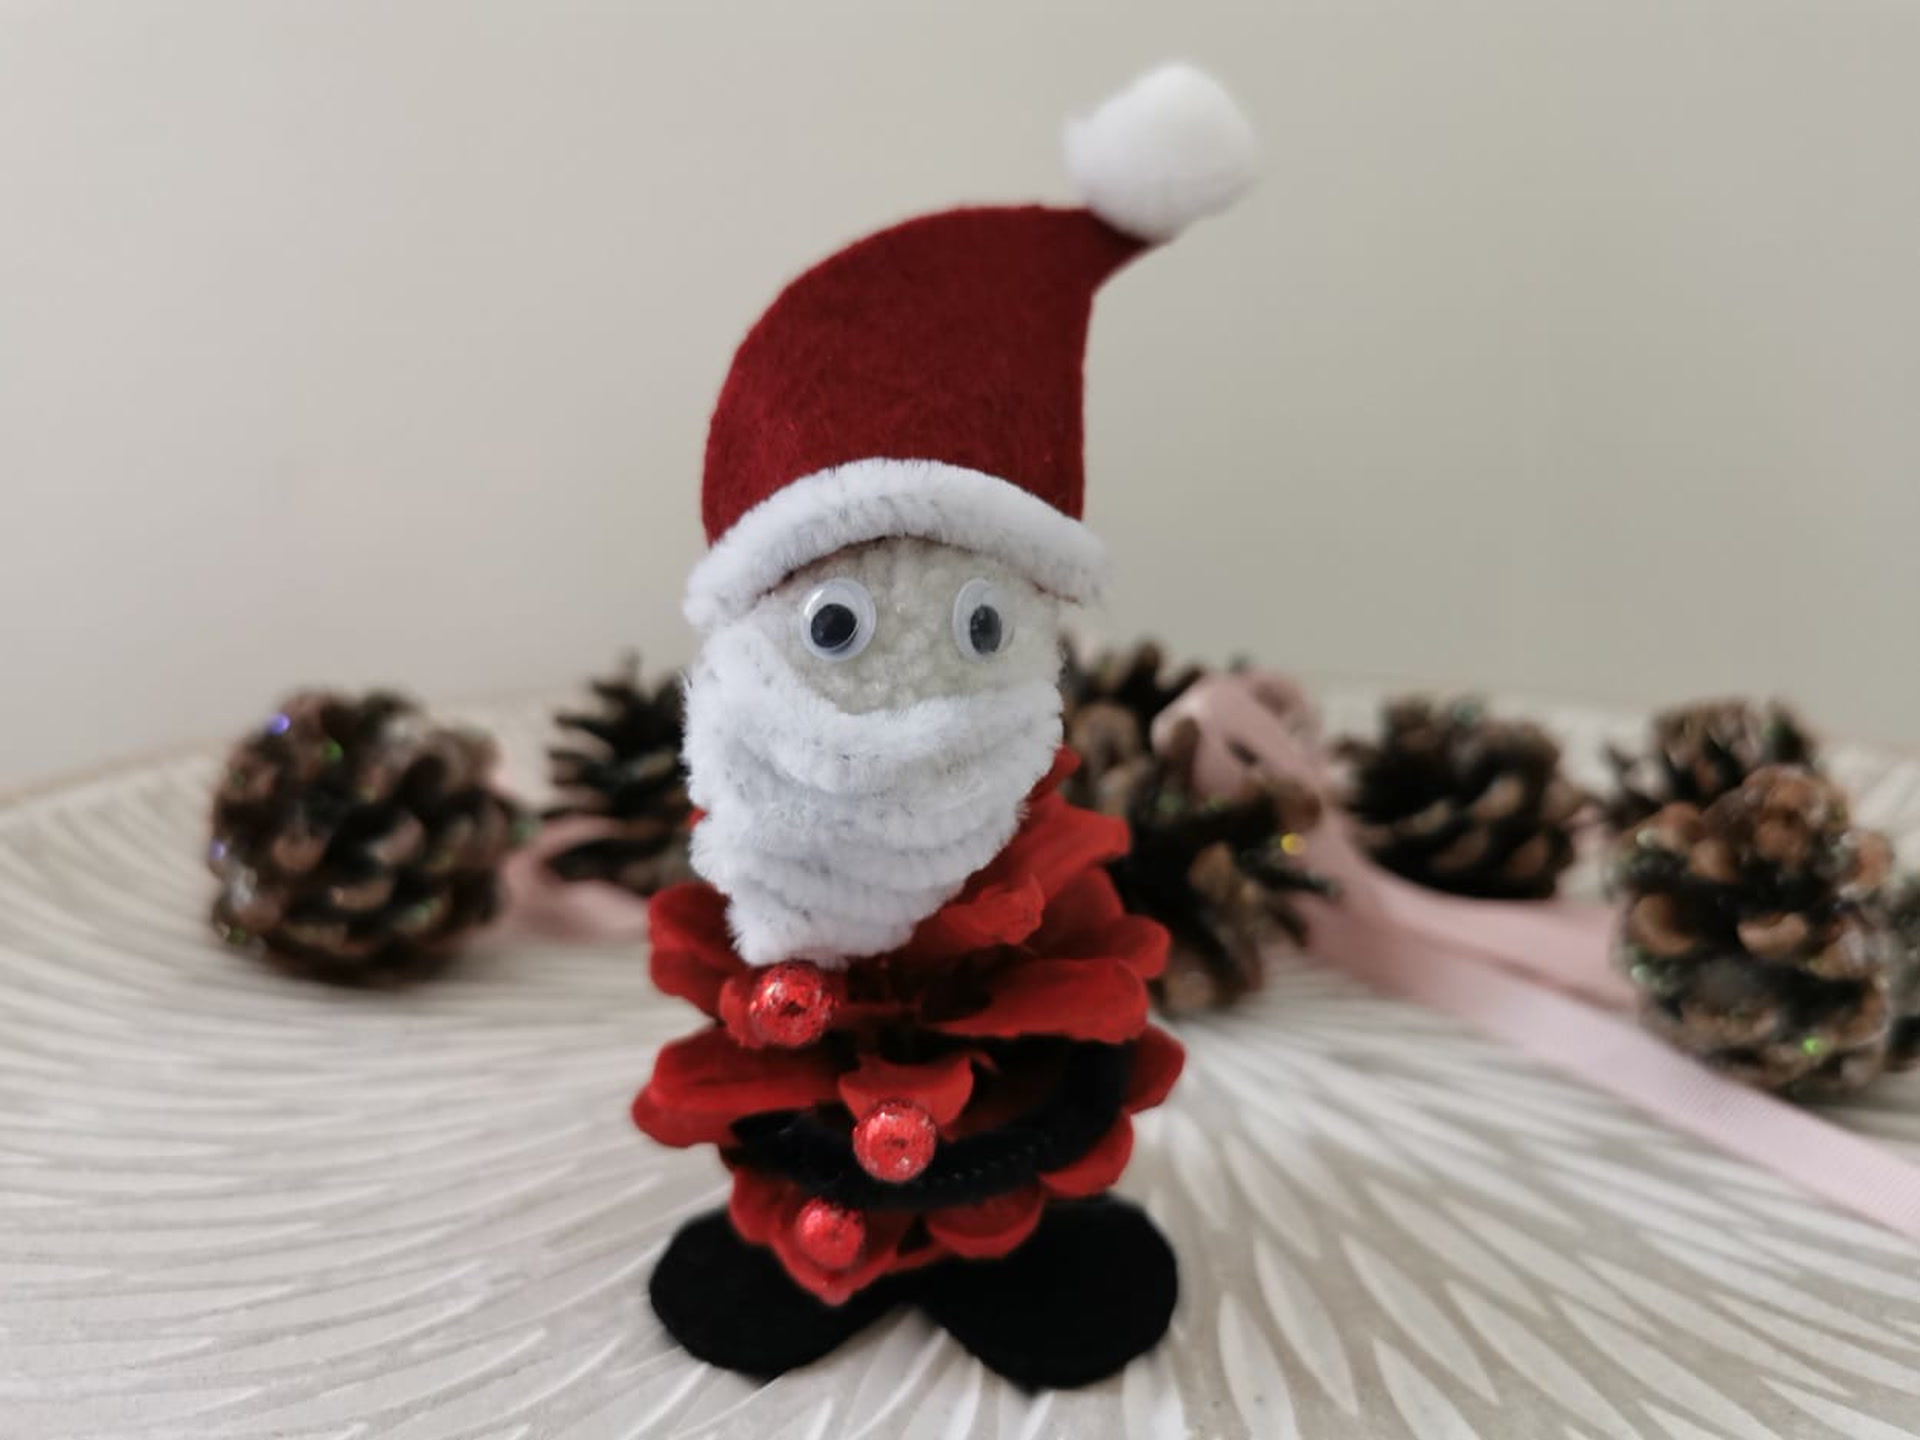 Des Pères Noël avec des rouleaux de papier toilette  Papier toilette noel,  Noël bricolage décoration, Pliage serviette noel